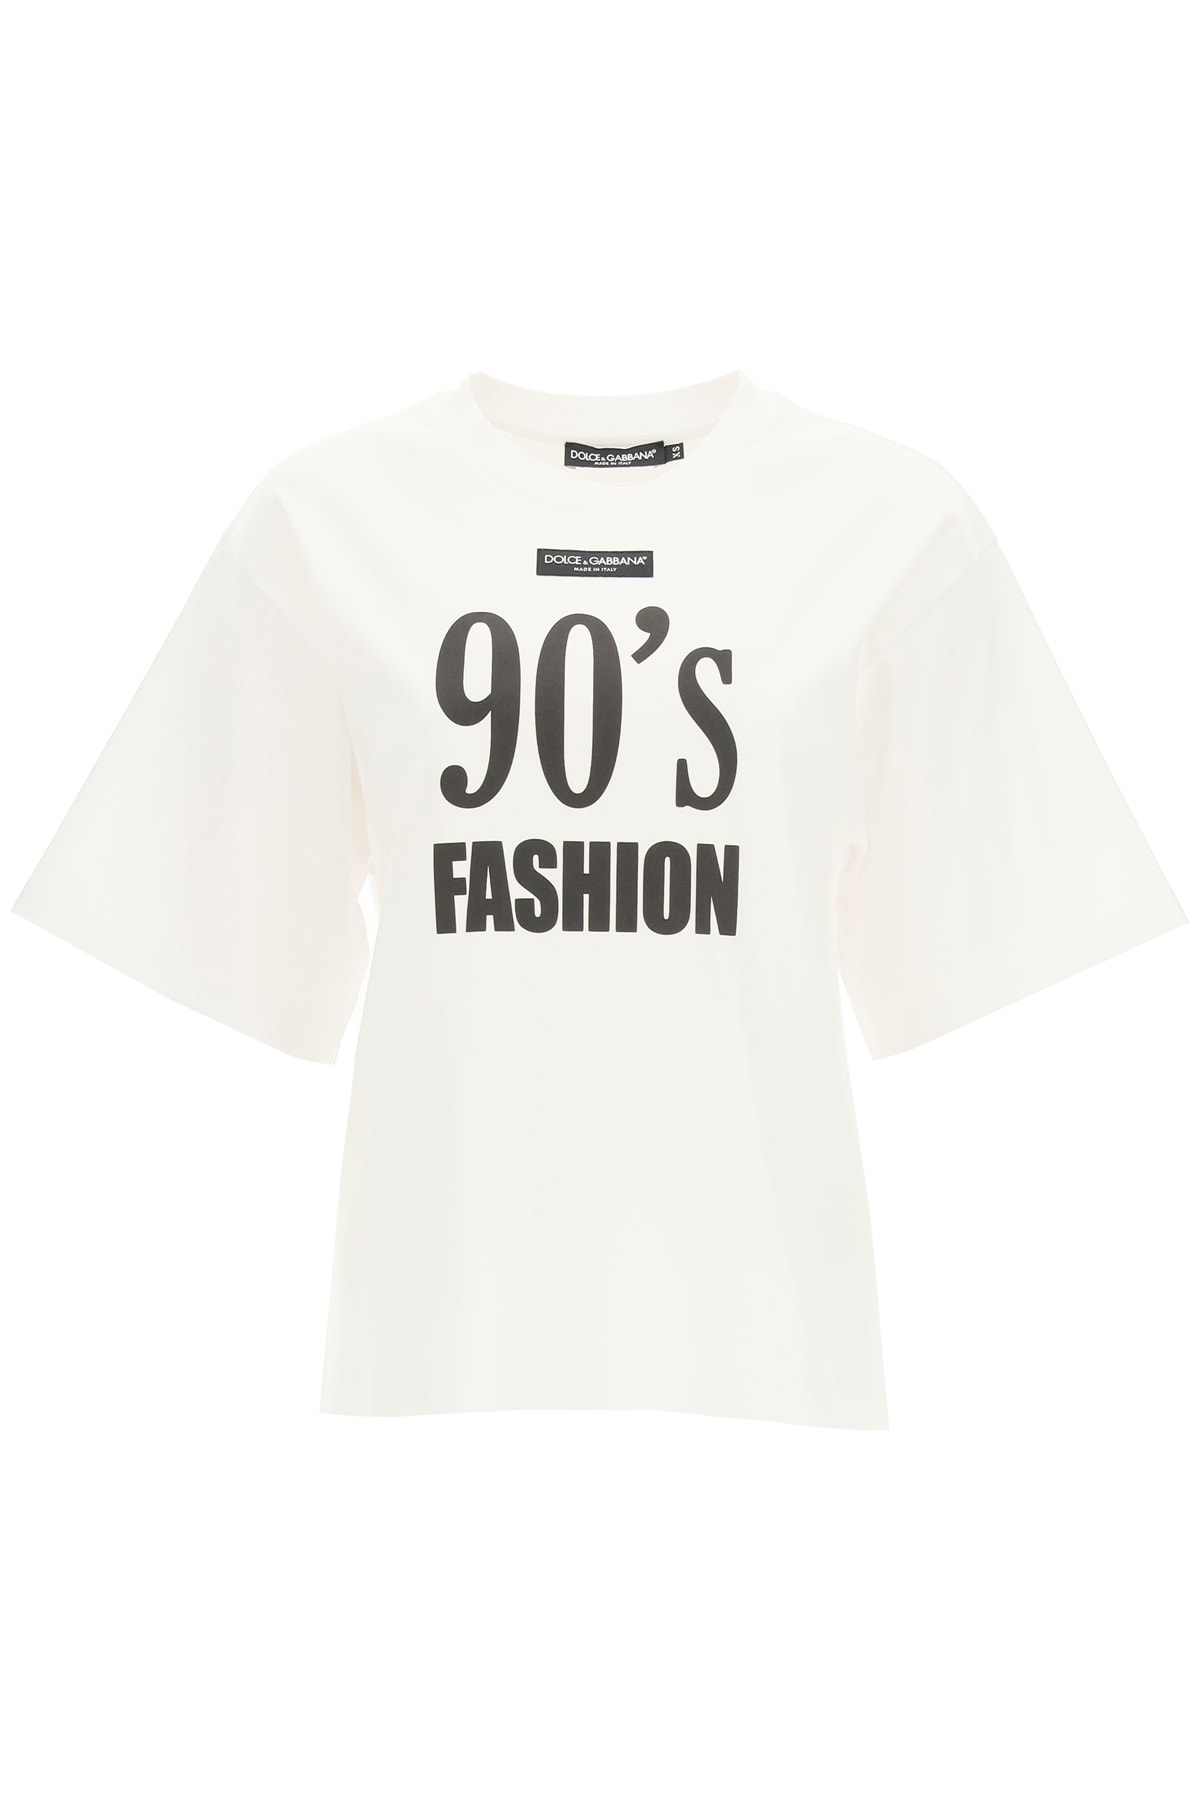 Dolce & Gabbana 90s Fashion T-shirt